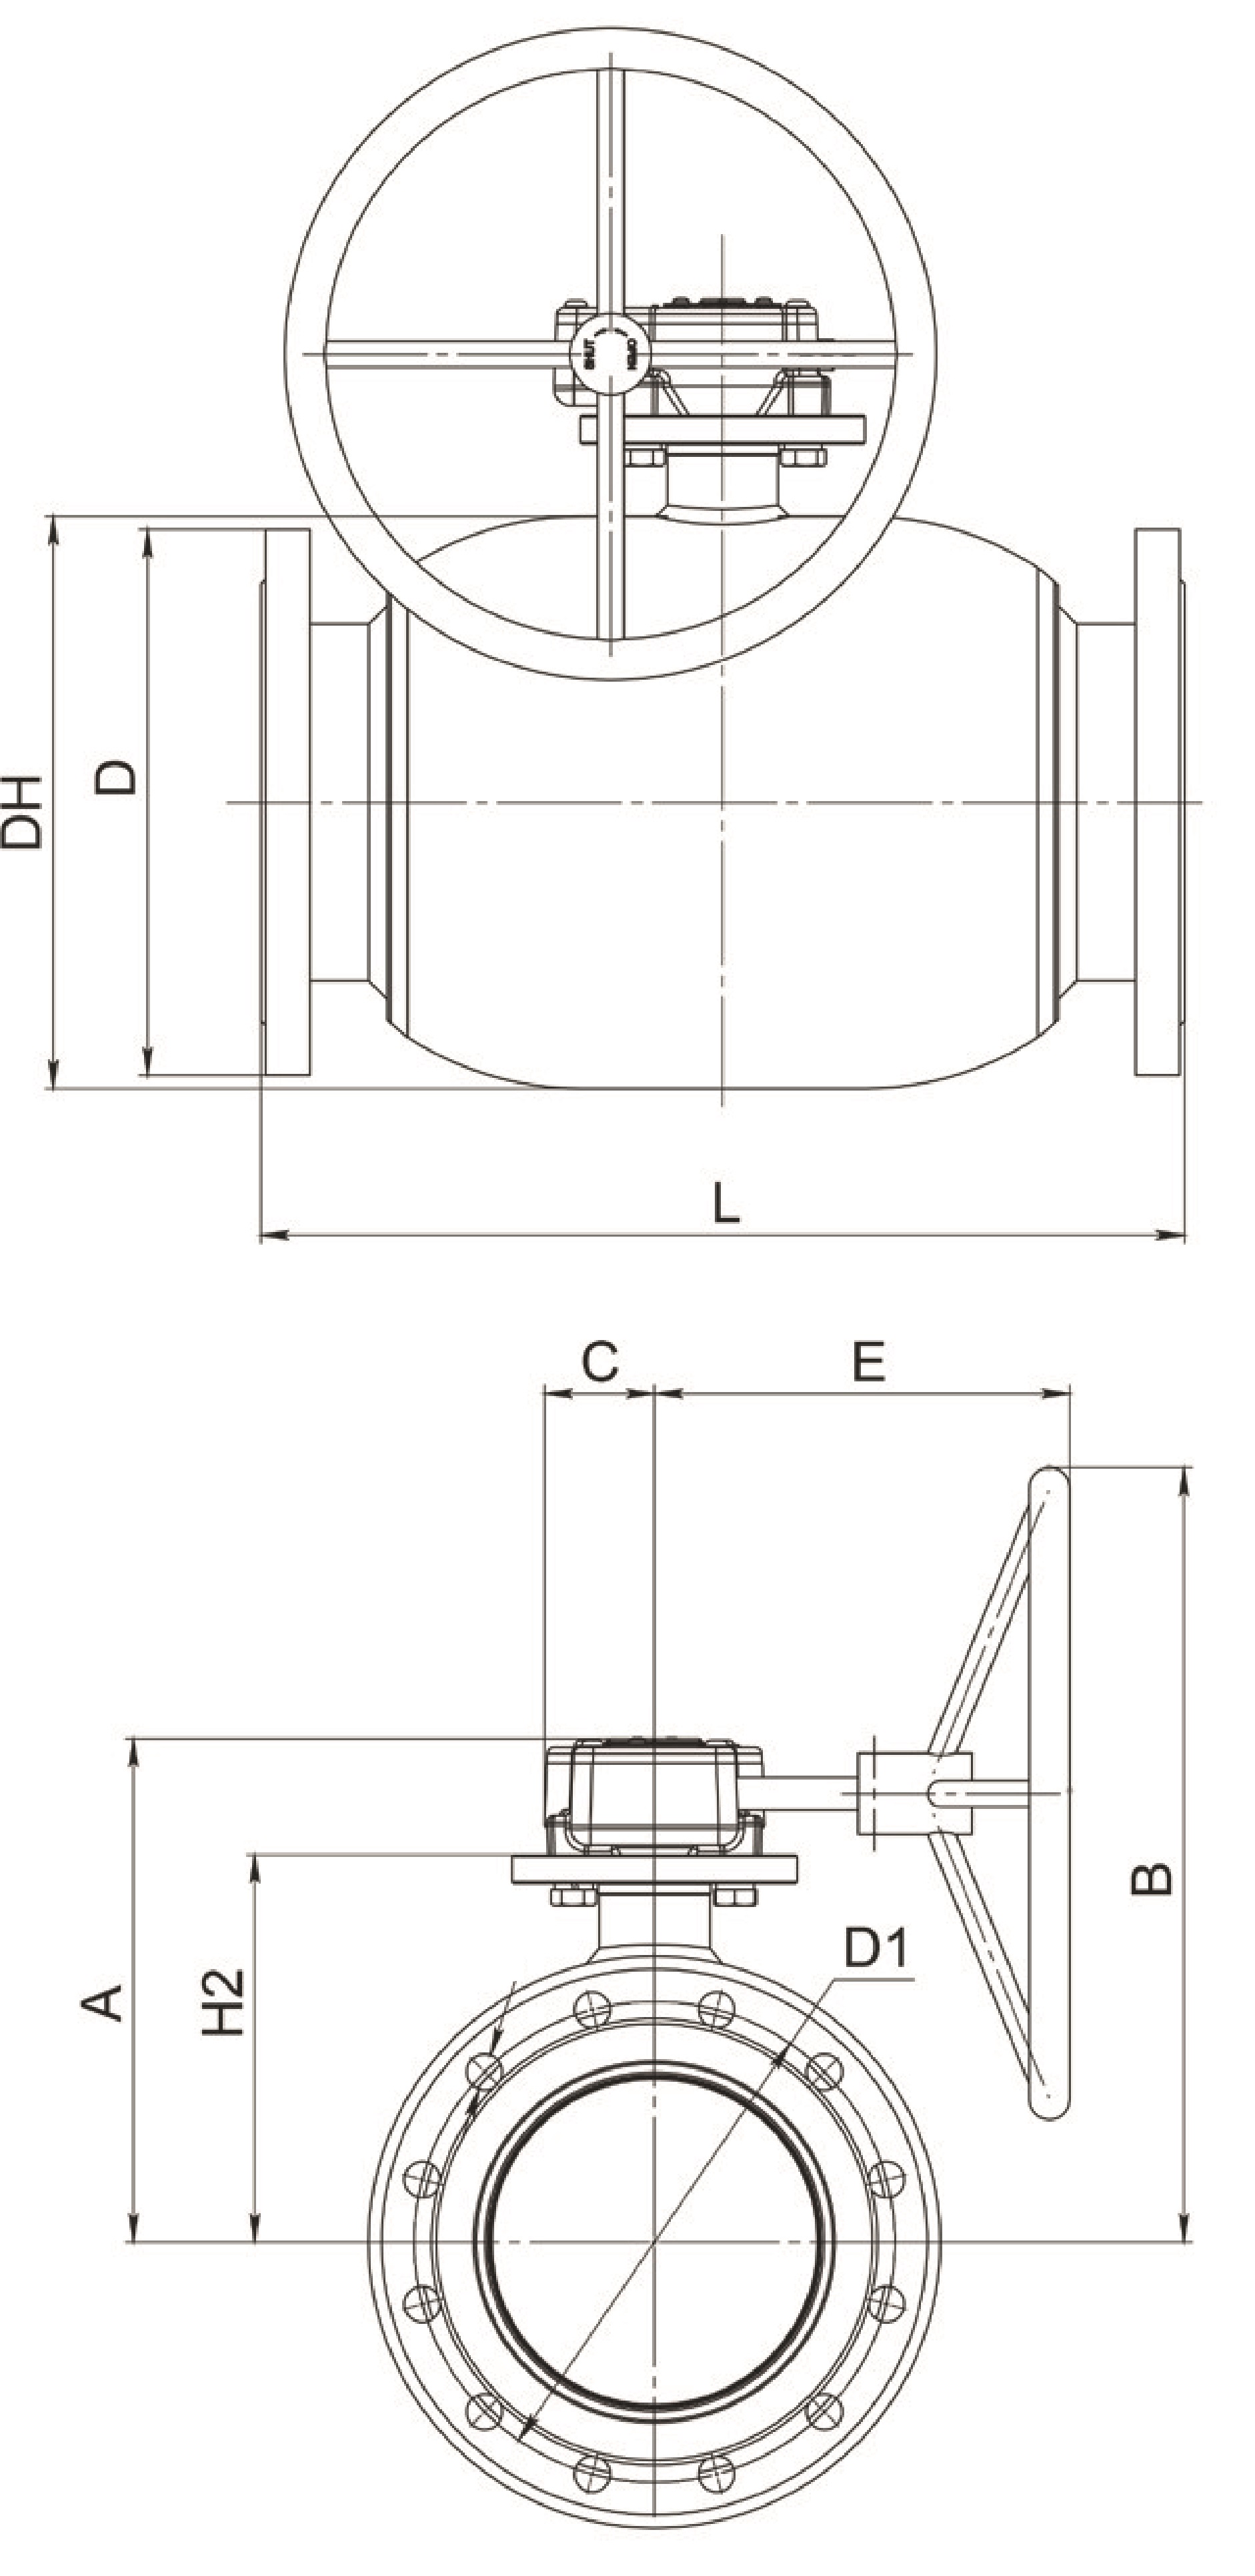 Кран шаровый Broen Ballomax-КШТ61.113.Р.25 Ду100 Ру25 полнопроходный с плавающим шаром, с ISO фланцем, корпус - сталь, уплотнение - EPDM, фланцевый, с редуктором